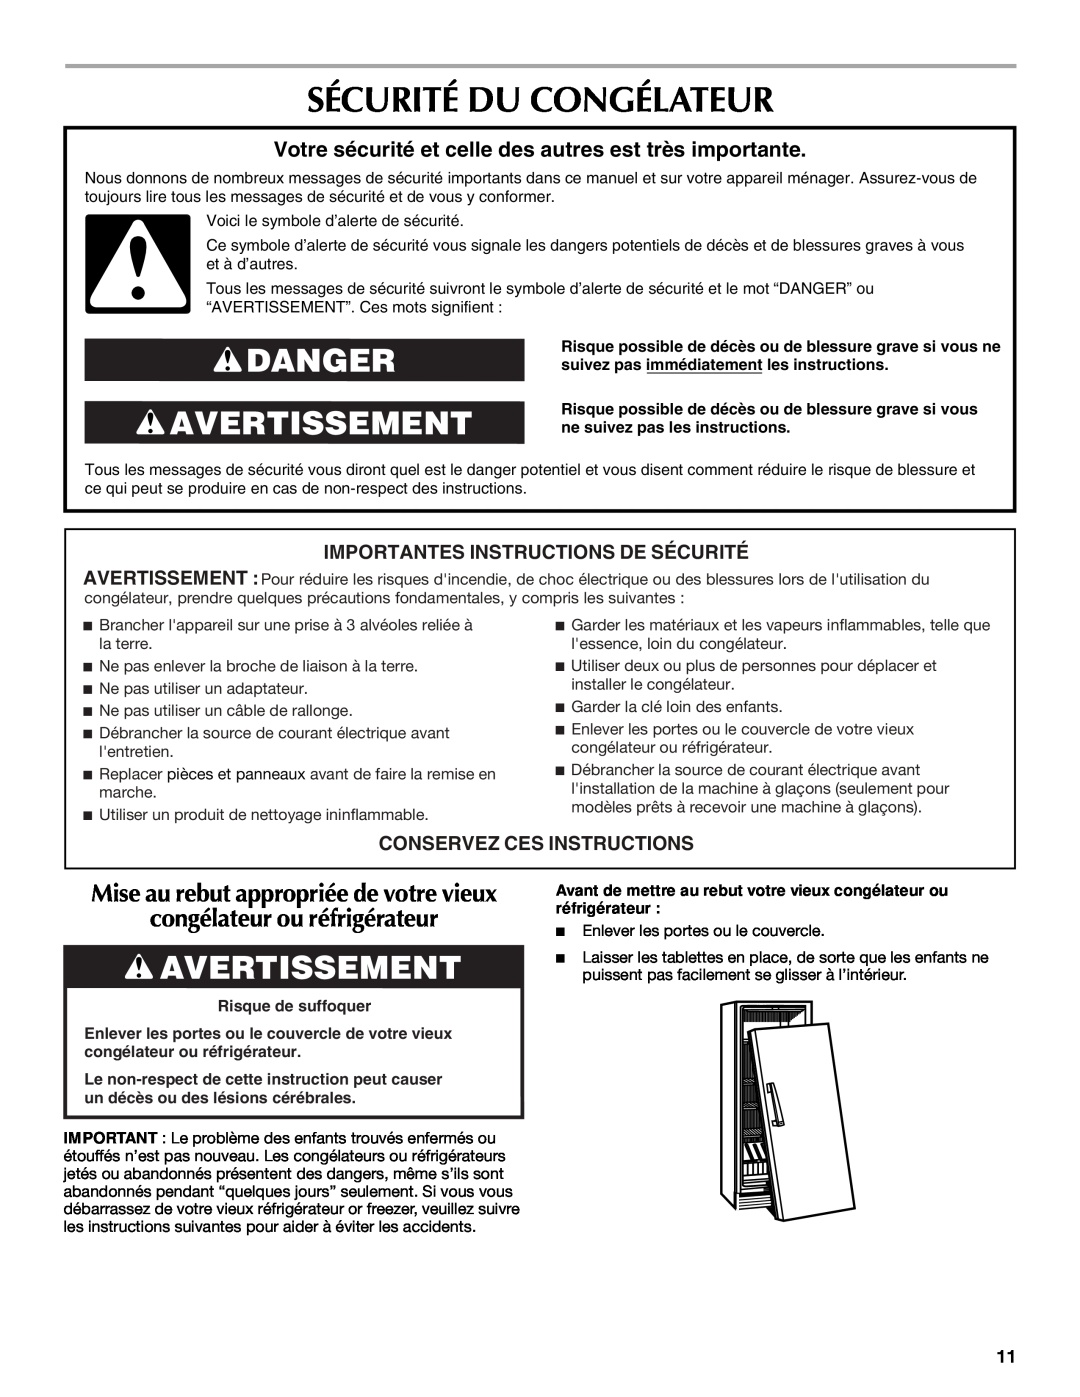 Maytag 1-82180-002 Sécurité Du Congélateur, Danger Avertissement, congélateur ou réfrigérateur, Conservez Ces Instructions 